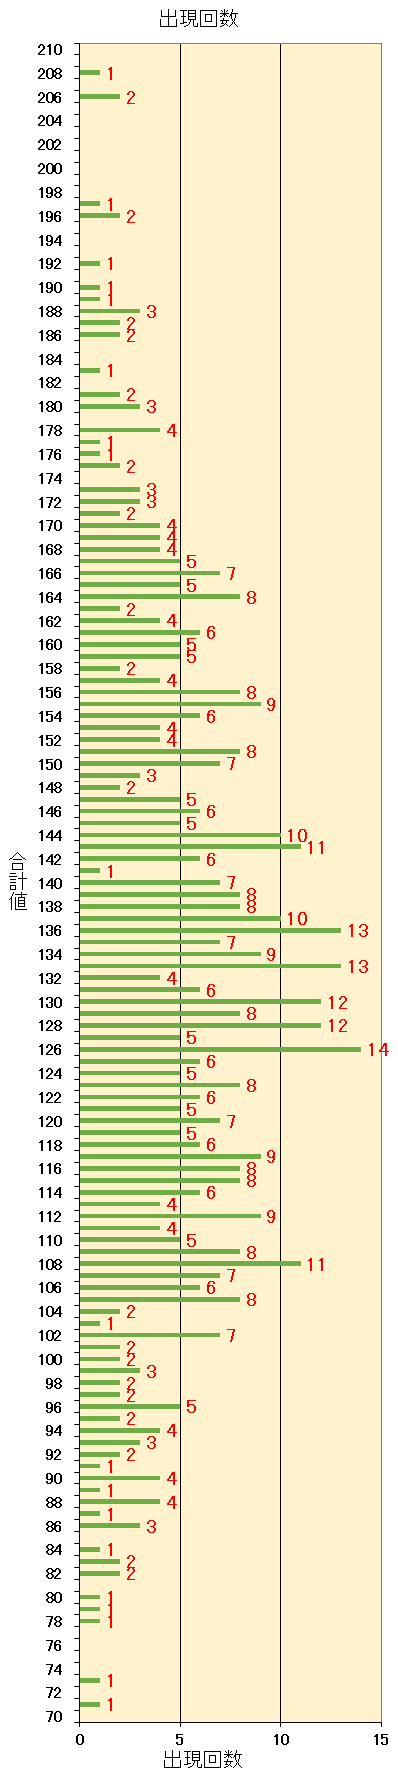 ロト7での第1当選数字から第7当選数字までを合計した合計値毎の出現回数の棒グラフ